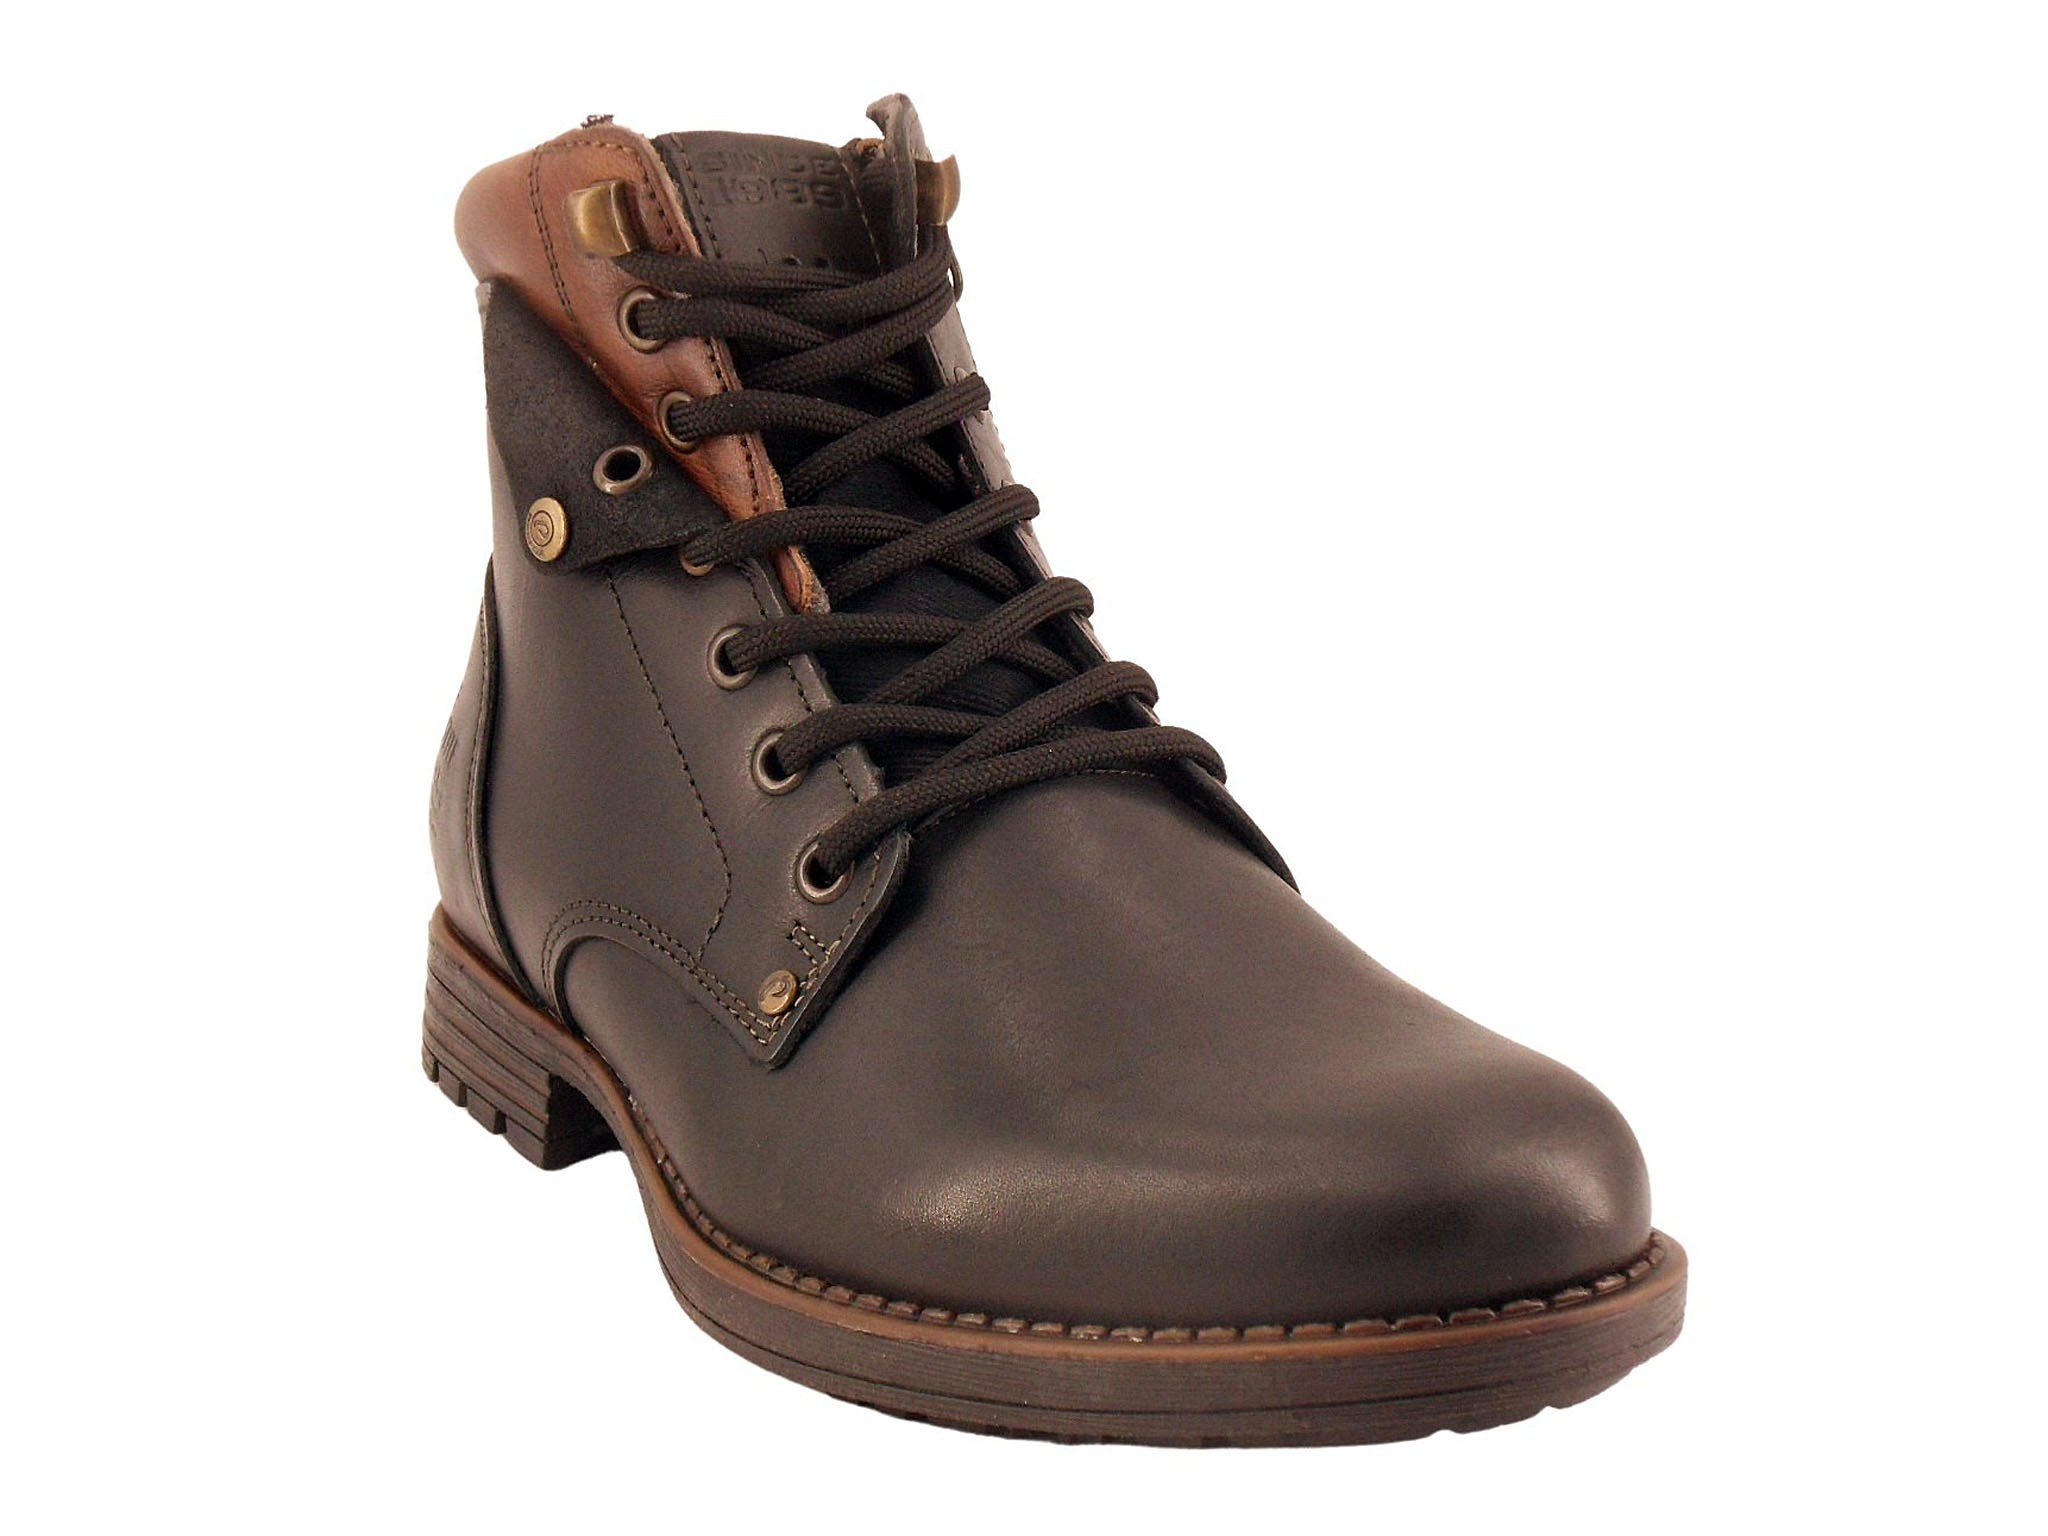 Pegada-boots homme-lacets-180746- 2 coloris-marron-chocolat